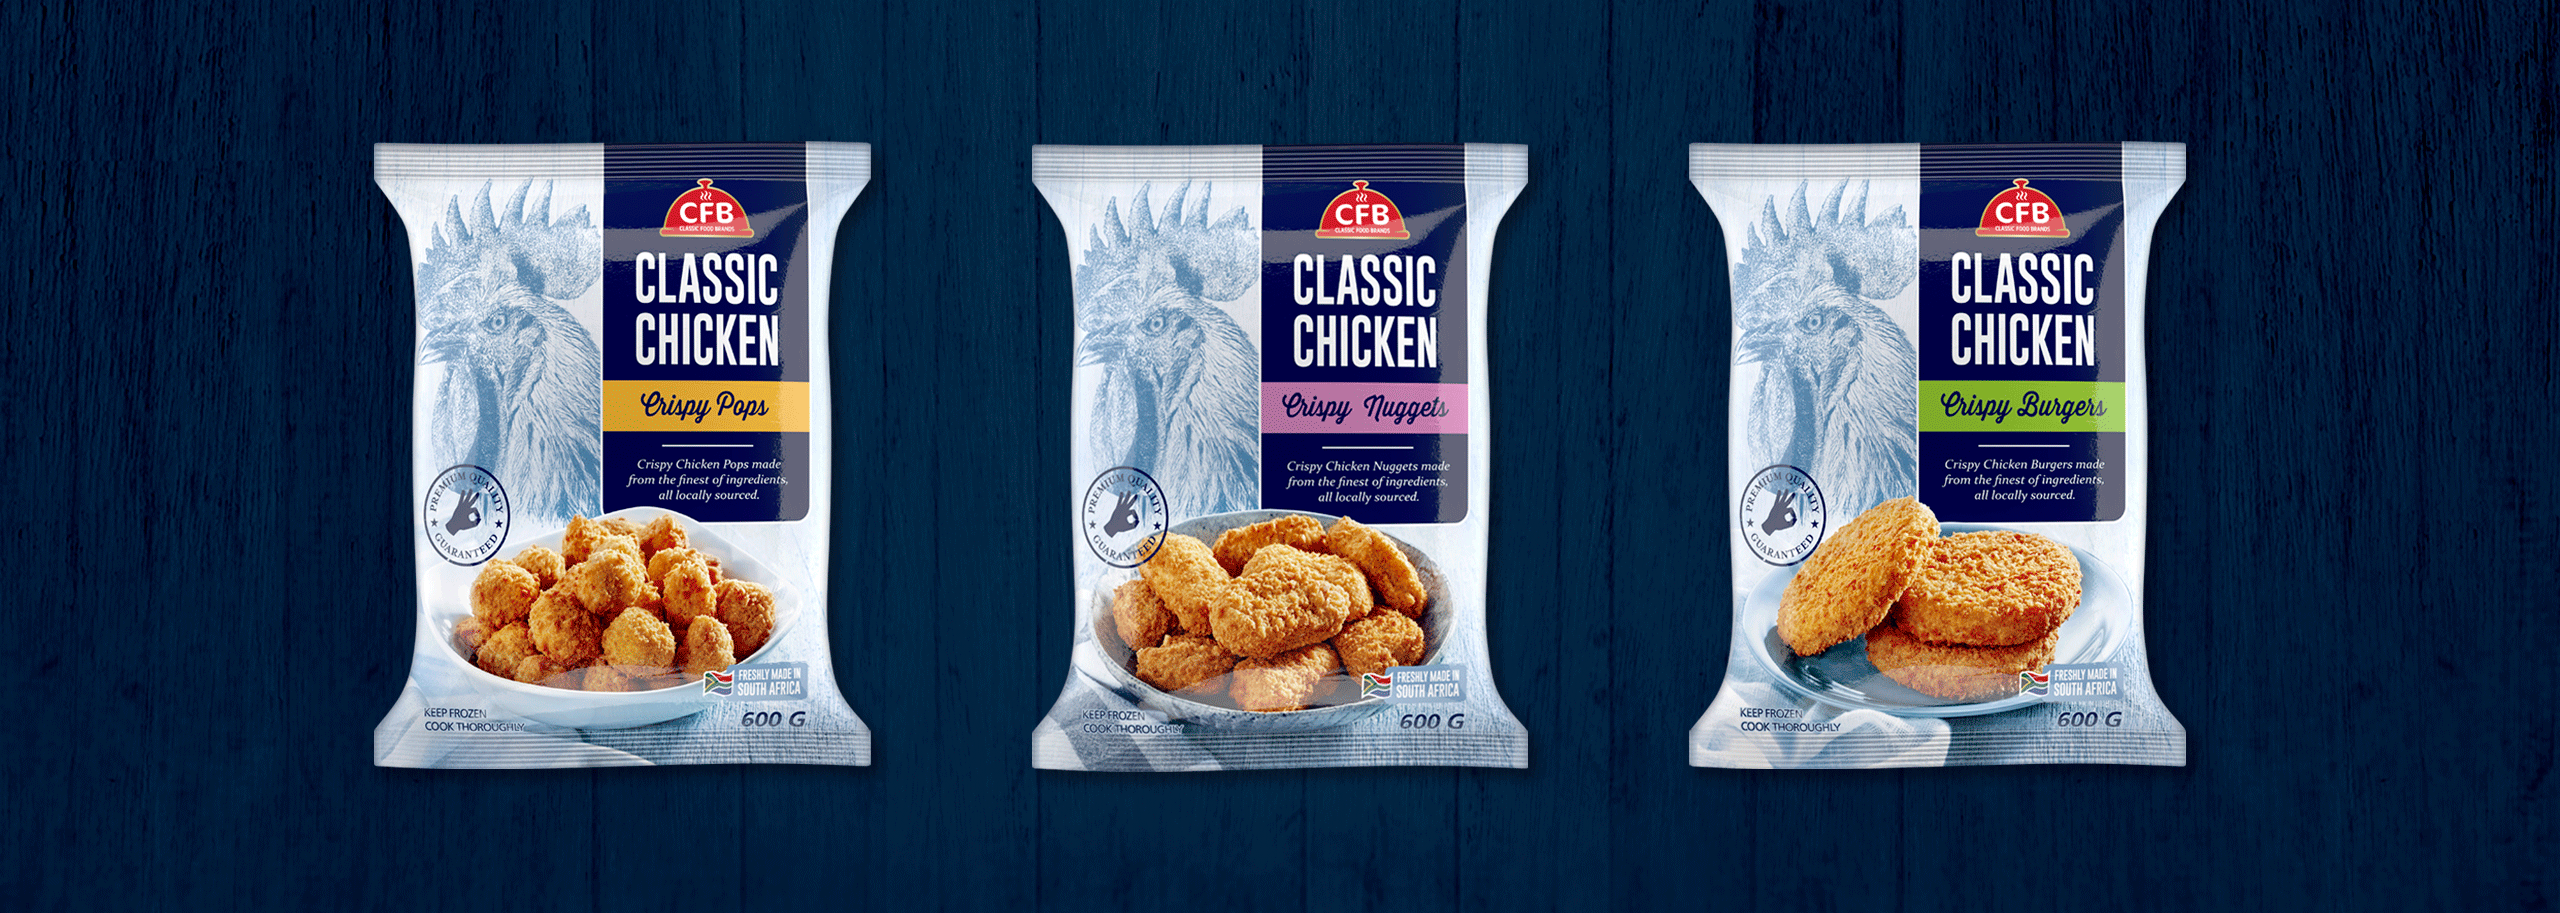 CFB Crispy Chicken Packaging-2